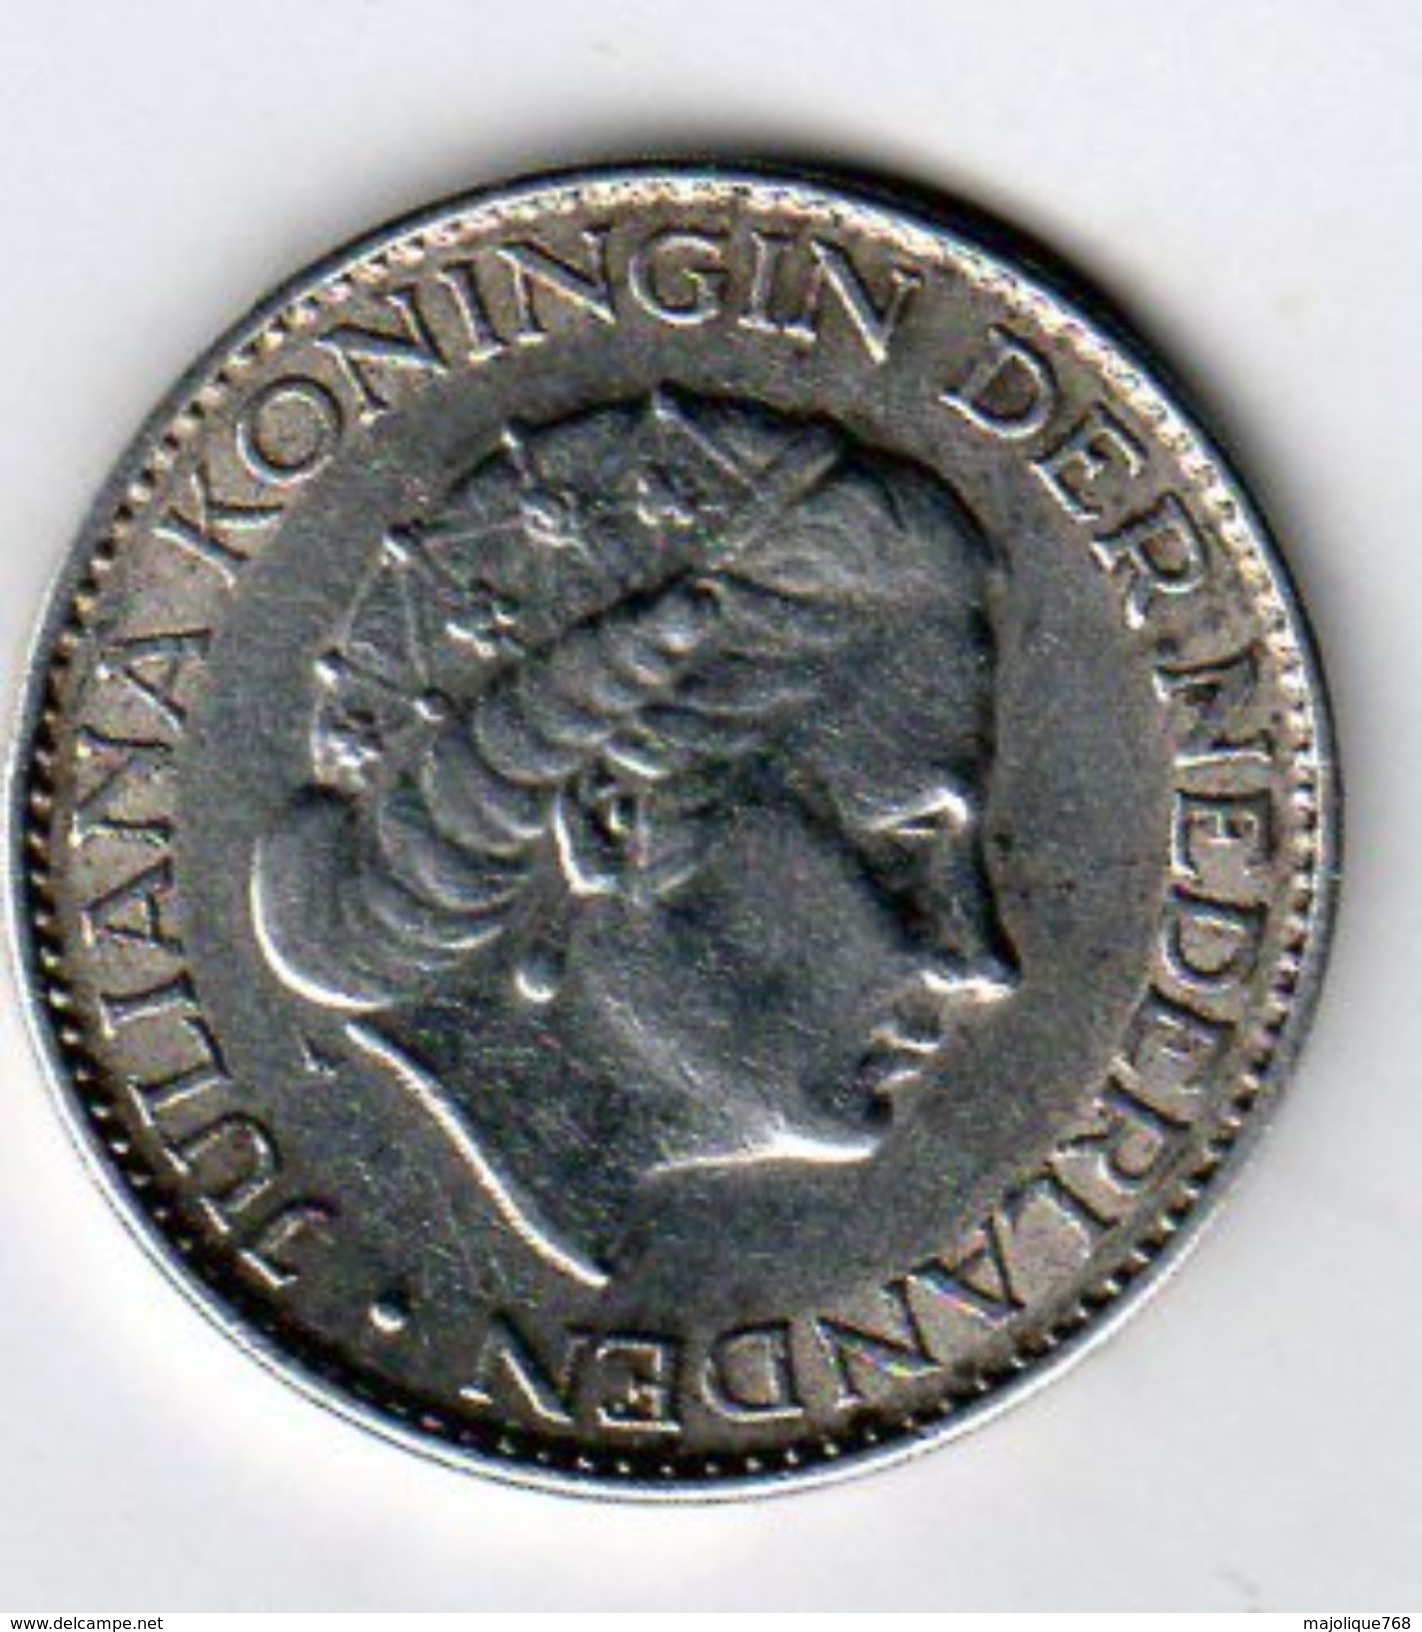 Pièce De Monnaie Du Pays-bas De 1 Gulden Argent 1963 En S U P - - Gold And Silver Coins